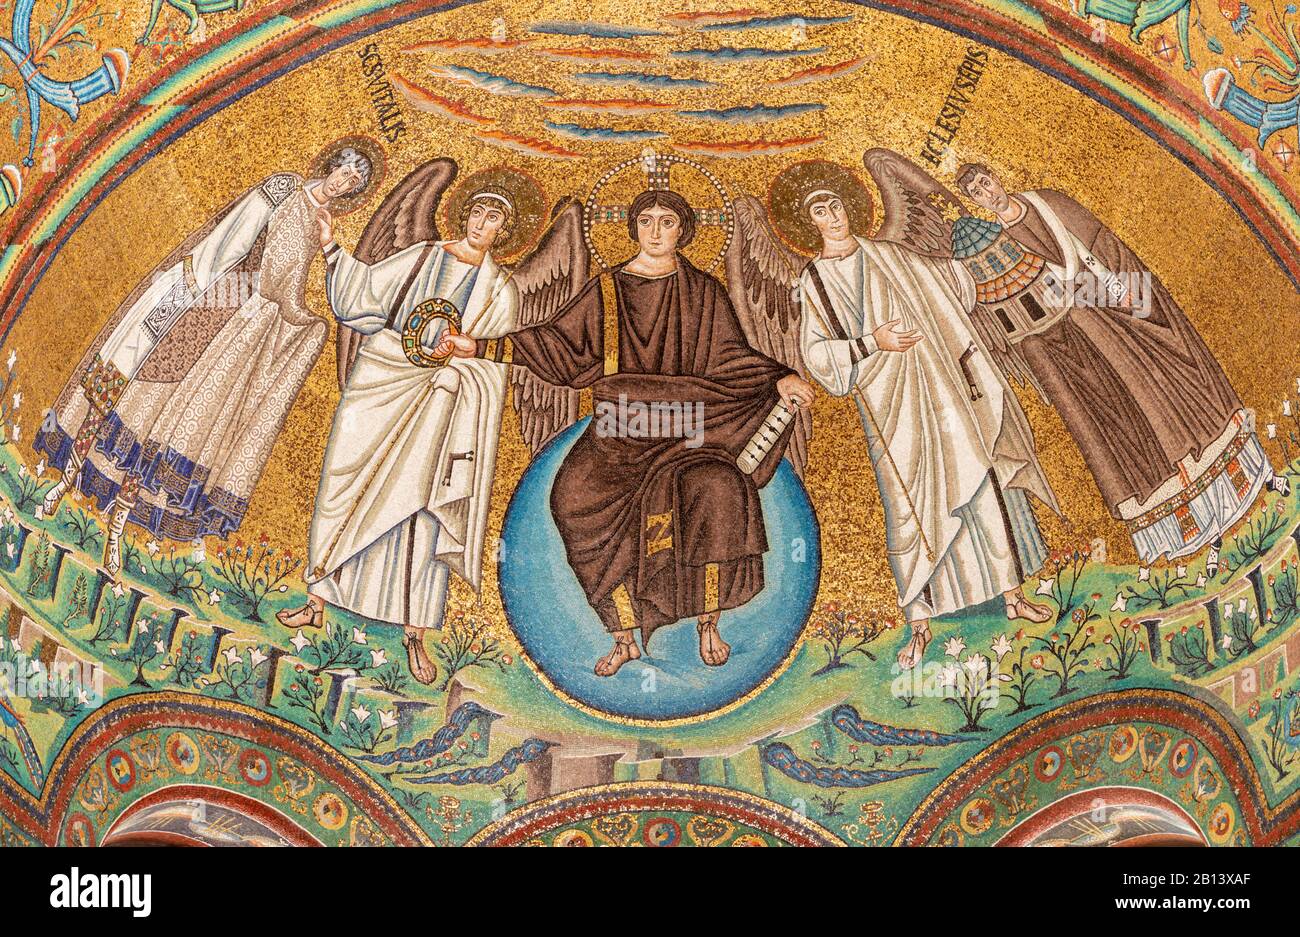 RAVENNA, ITALIA - 28 GENNAIO 2020: Il mosaico di Gesù Cristo il Pantocratore dall'abside del presbiterio nella chiesa Basilica di San vitale. Foto Stock